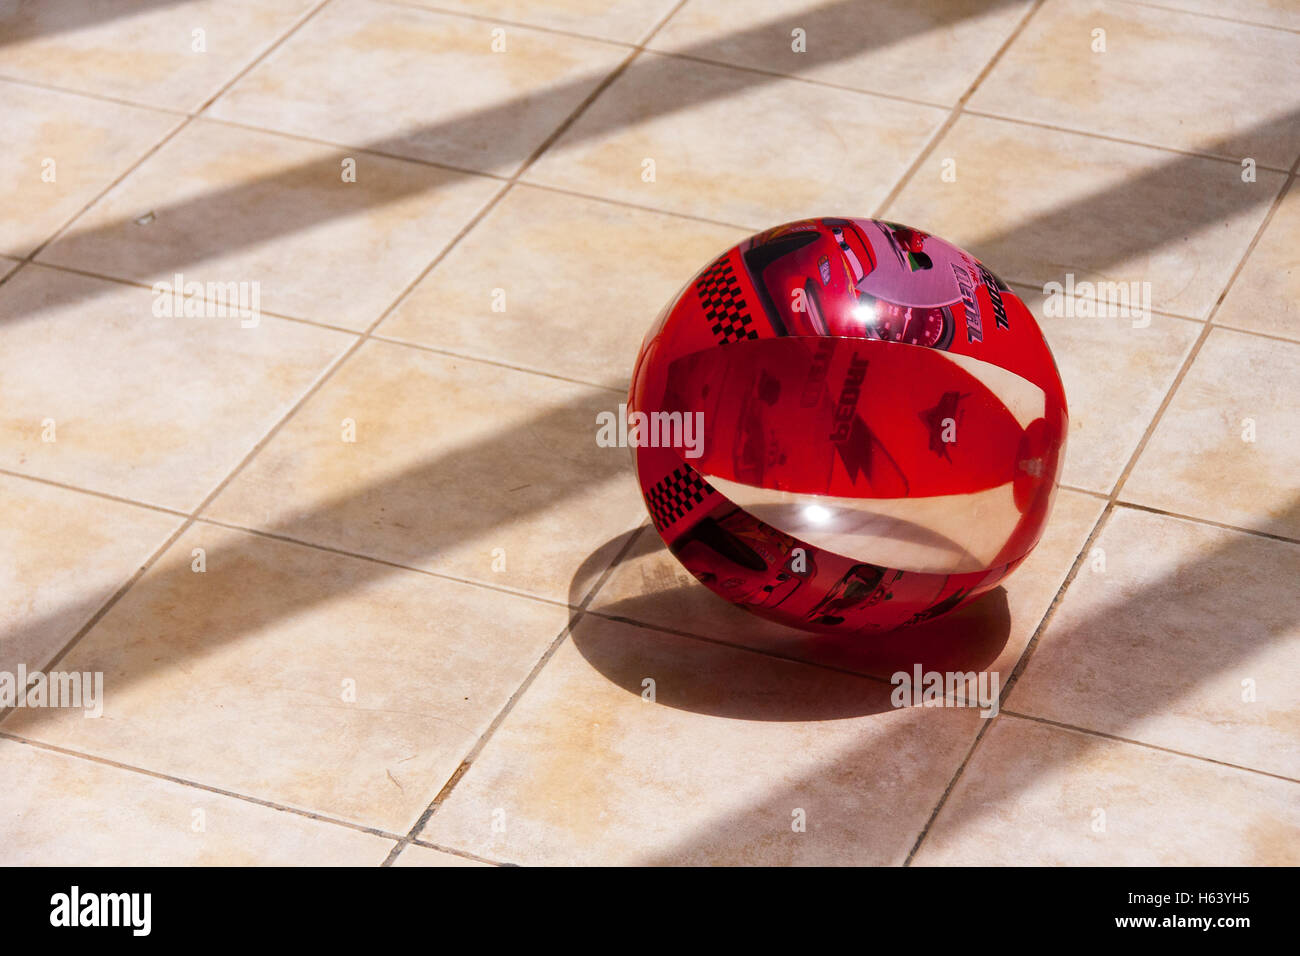 Ballon de plage soleil sur sol carrelage Banque D'Images